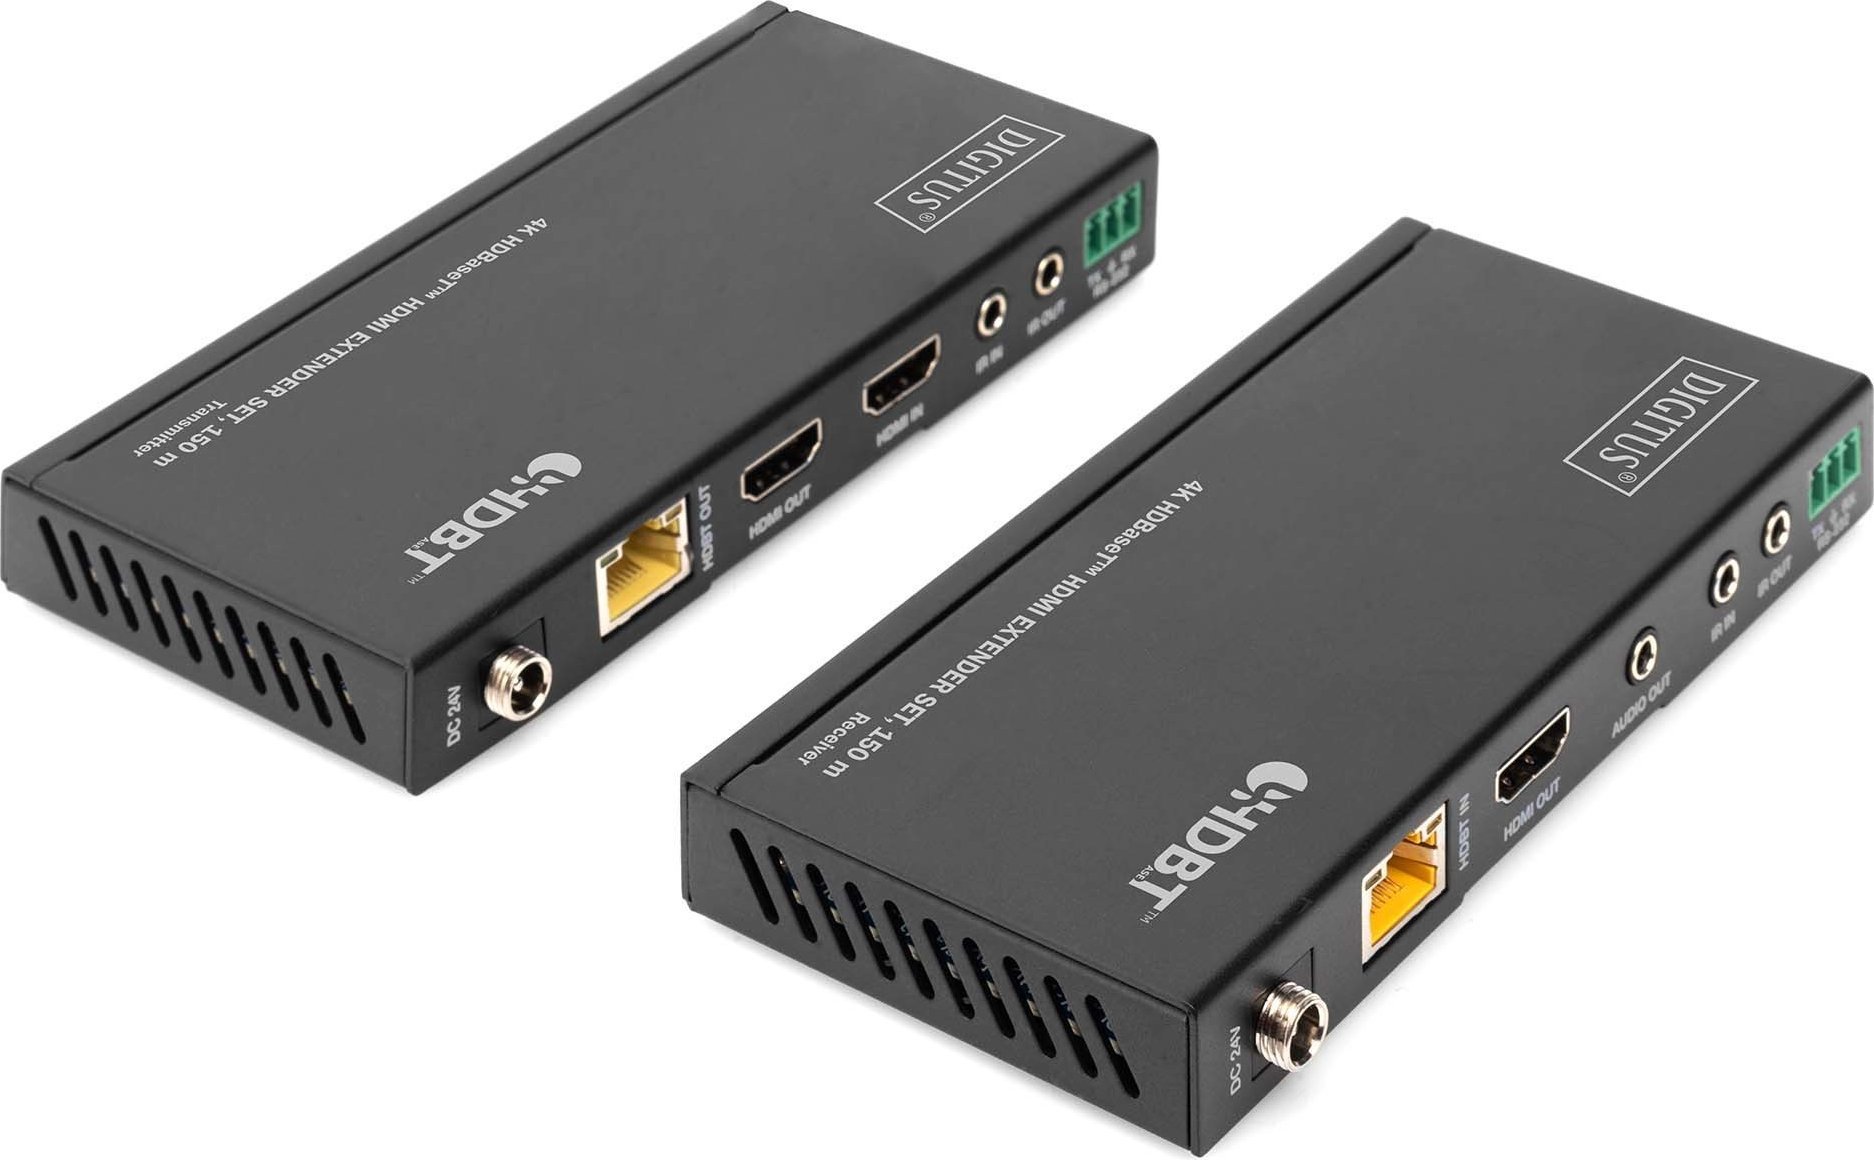 Setul HDMI HDBASET Digitus EXT 150M 4K este un dispozitiv care permite transmiterea semnalului HDMI pana la 150 de metri, utilizand tehnologia HDBASET. Acest set este compatibil cu rezolutia 4K si poate fi folosit pentru prelungirea cablurilor HDMI,